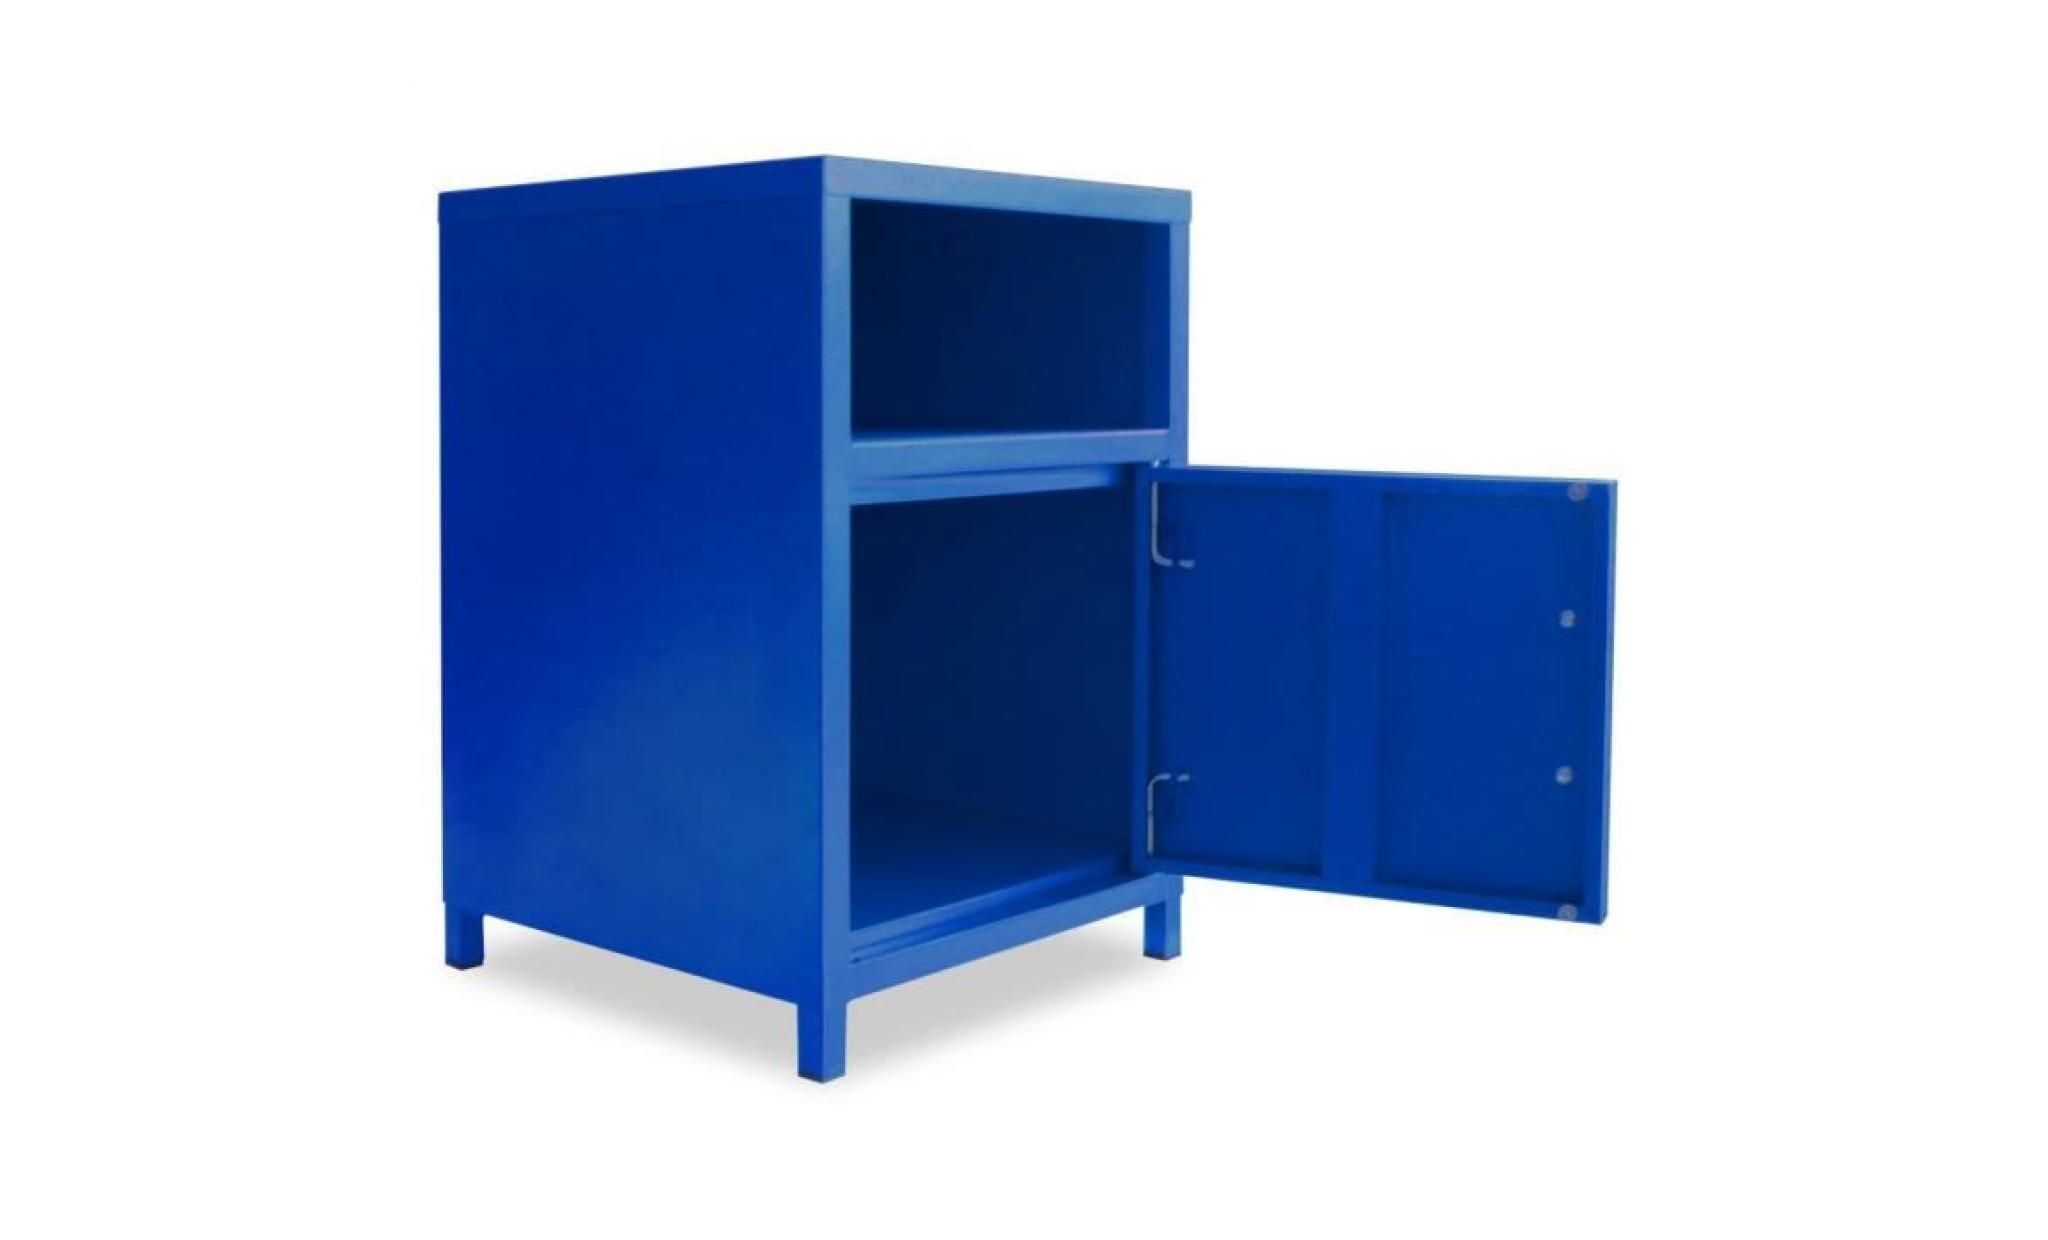 chevet   table de chevet   table de nuit   meuble de chevet   armoire de chevet 35 x 35 x 51 cm bleu pas cher